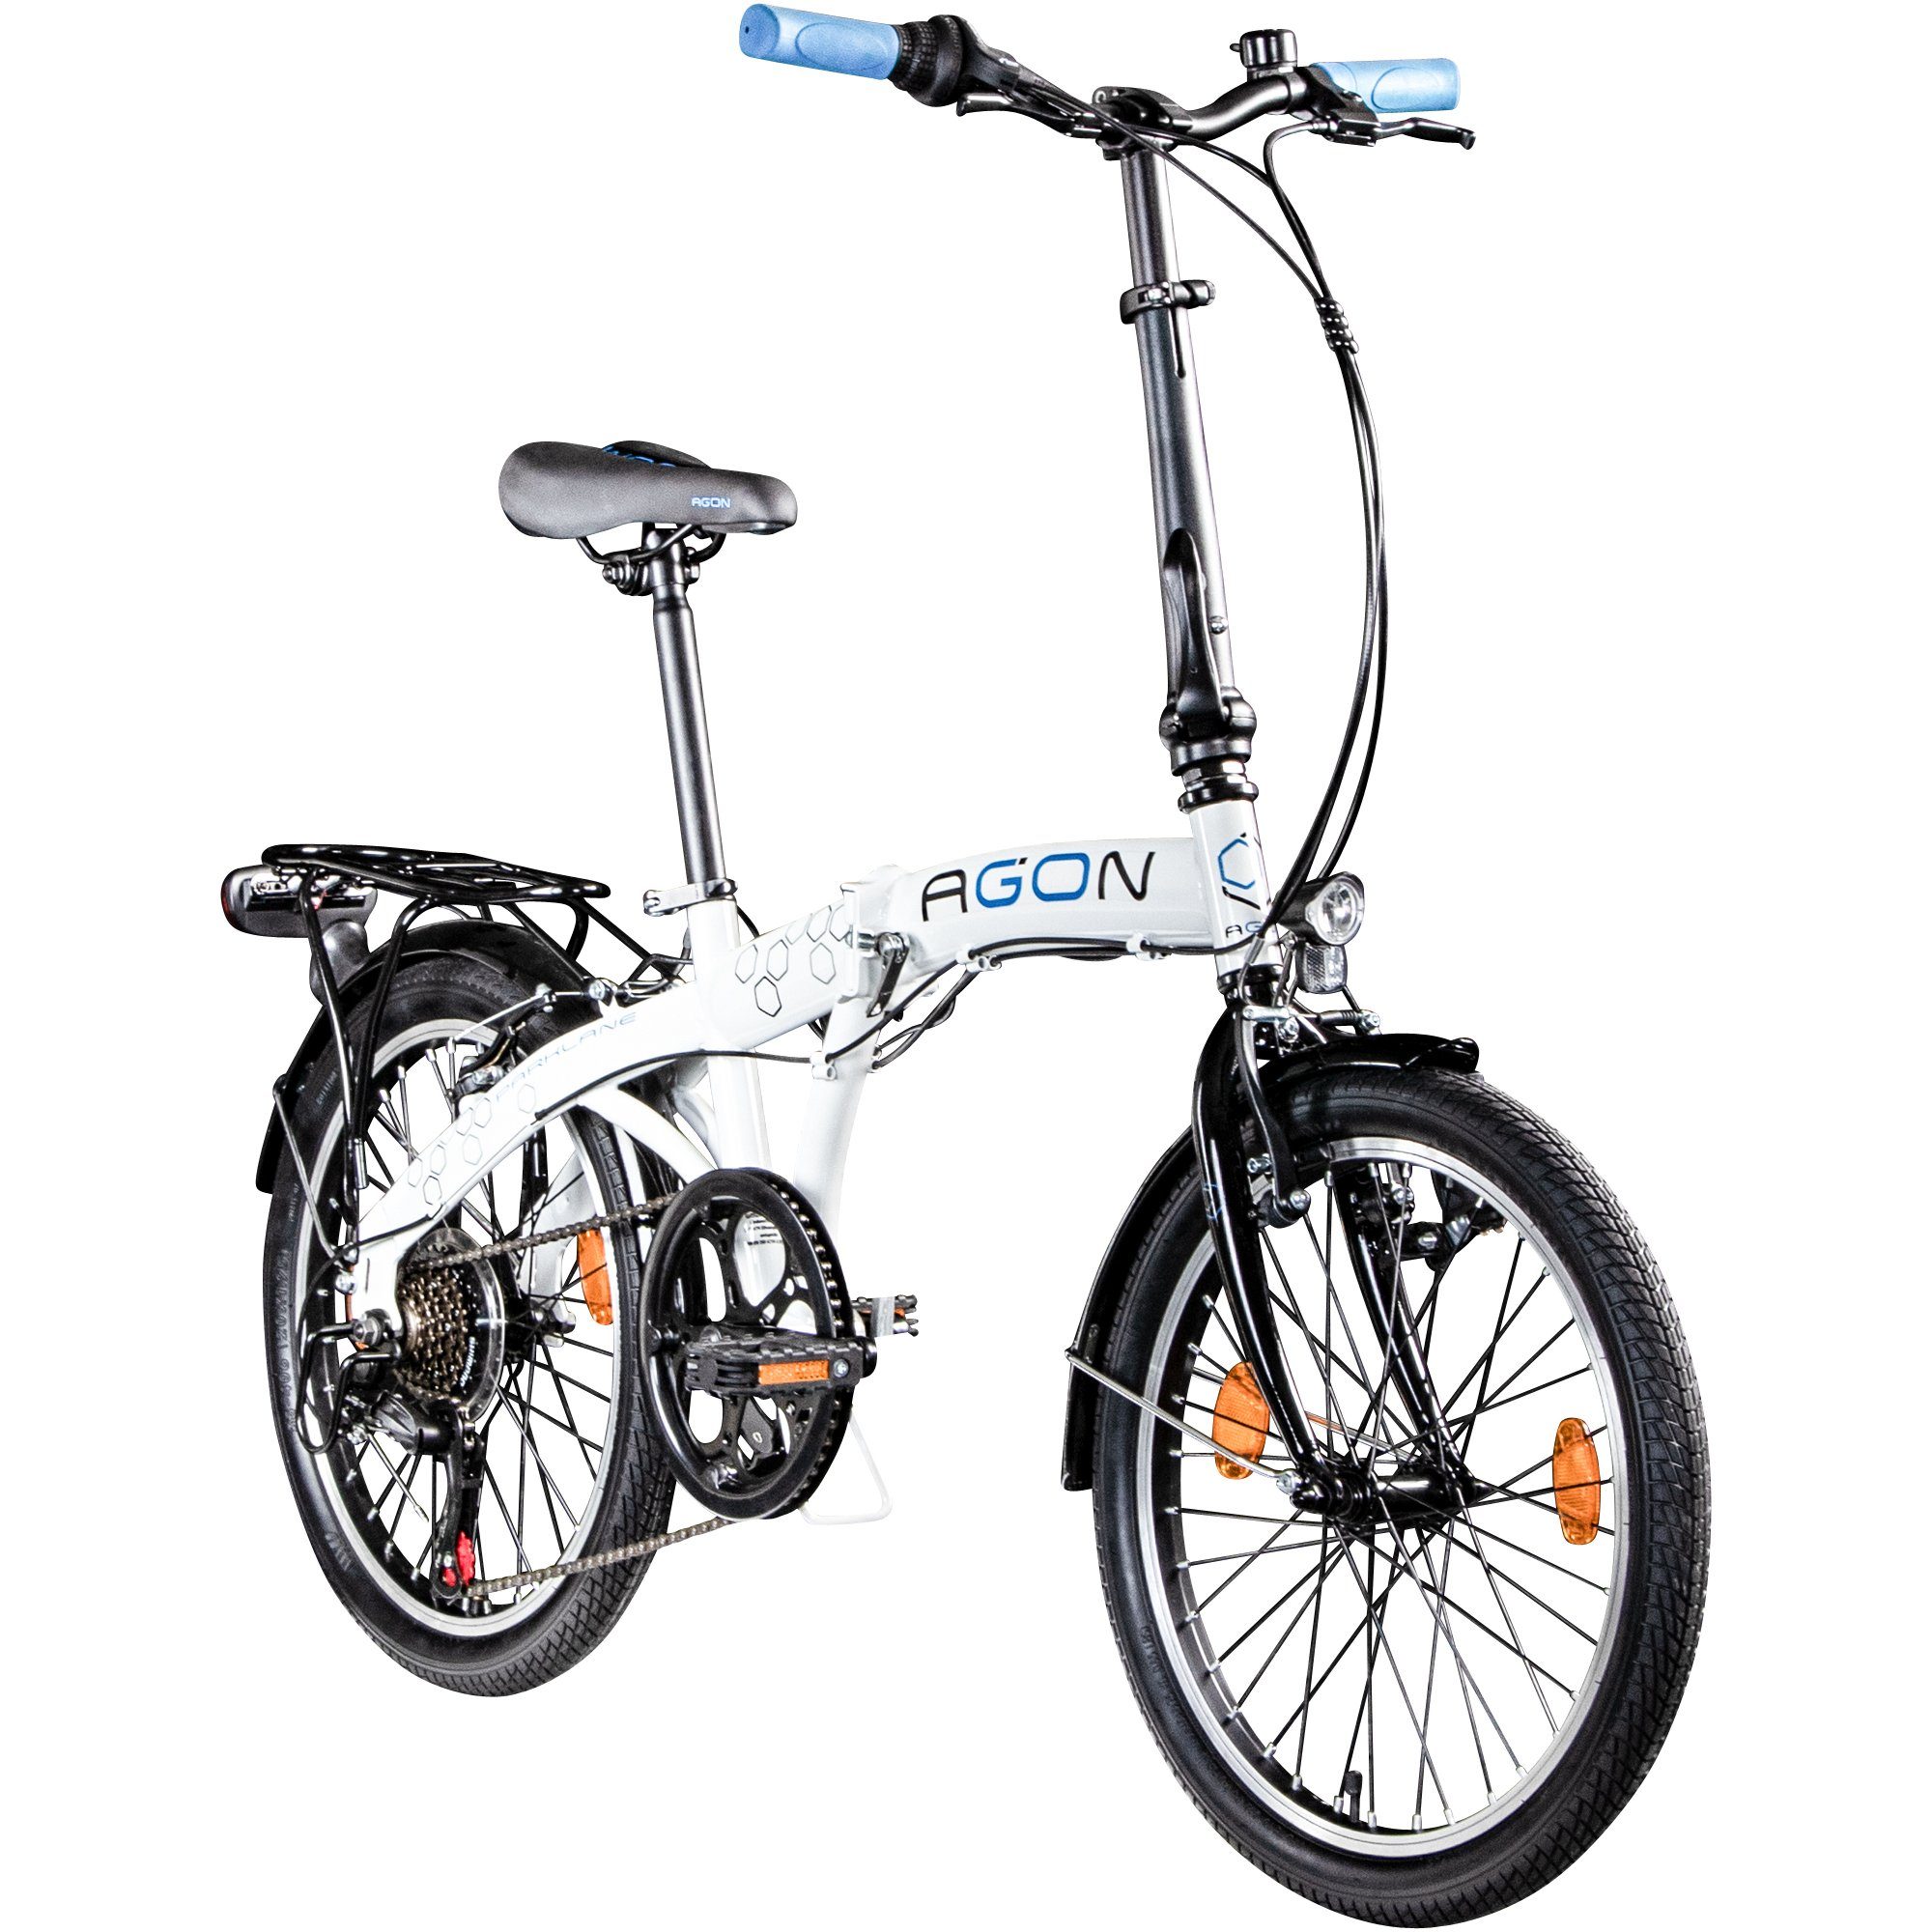 agon® Faltrad Parklane, 6 Gang Shimano Tourney Schaltwerk, Kettenschaltung, 20 Zoll Klapprad 150 - 185 cm mit StVZO Licht Faltrad City Urban Bike